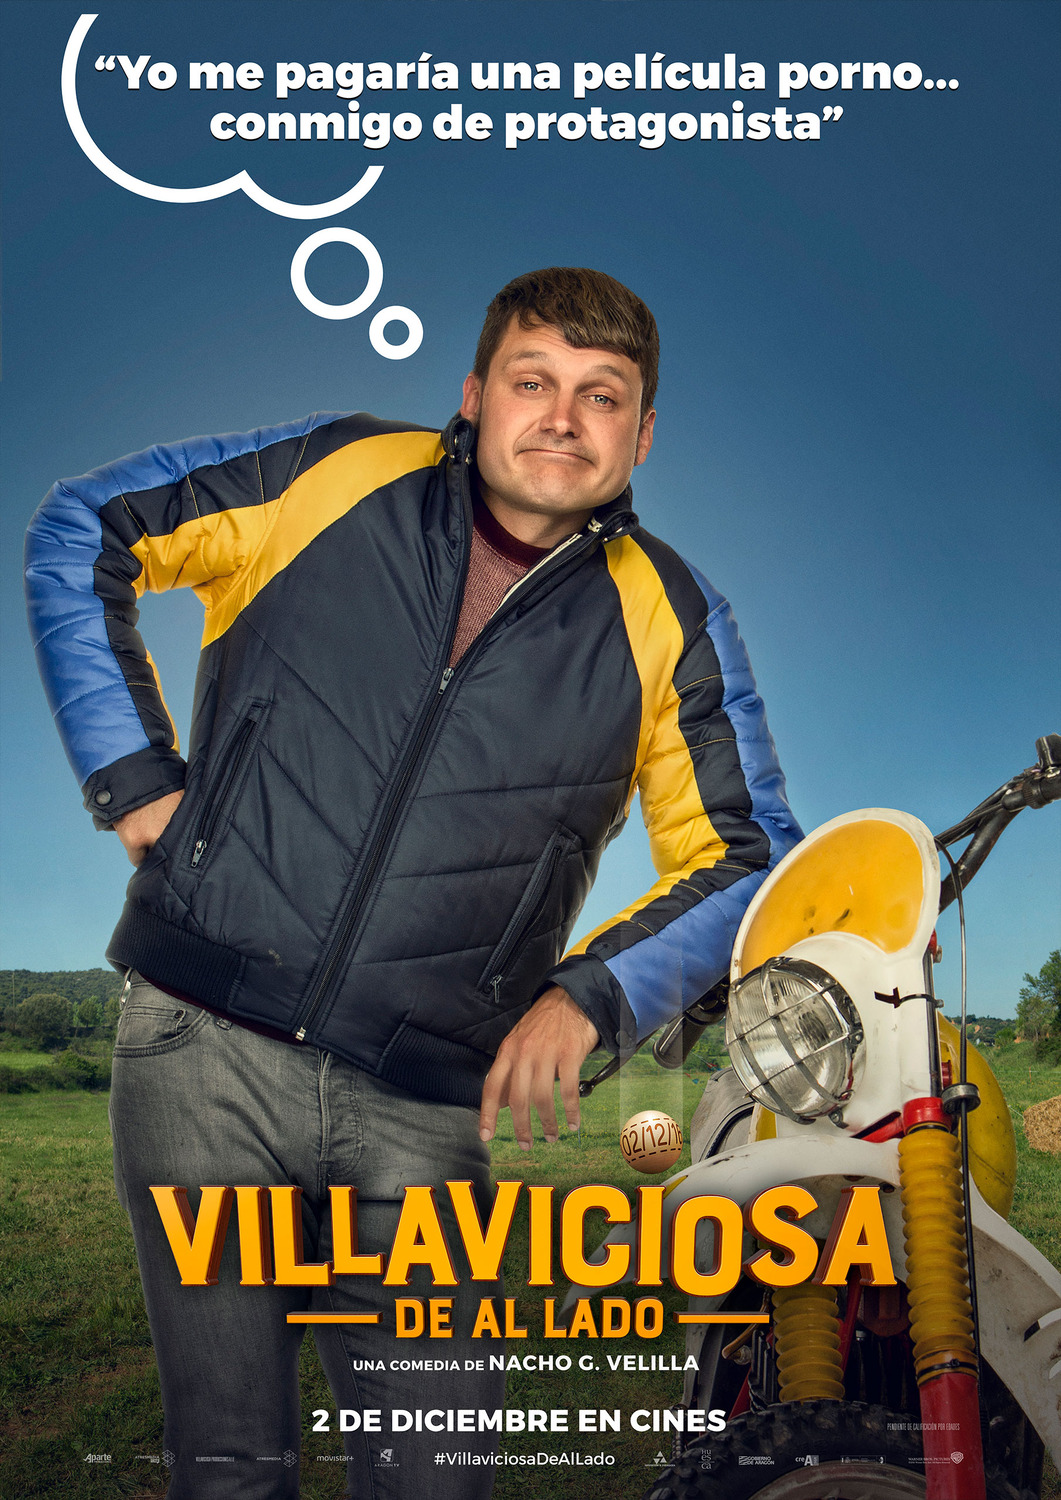 Extra Large Movie Poster Image for Villaviciosa de al lado (#5 of 8)